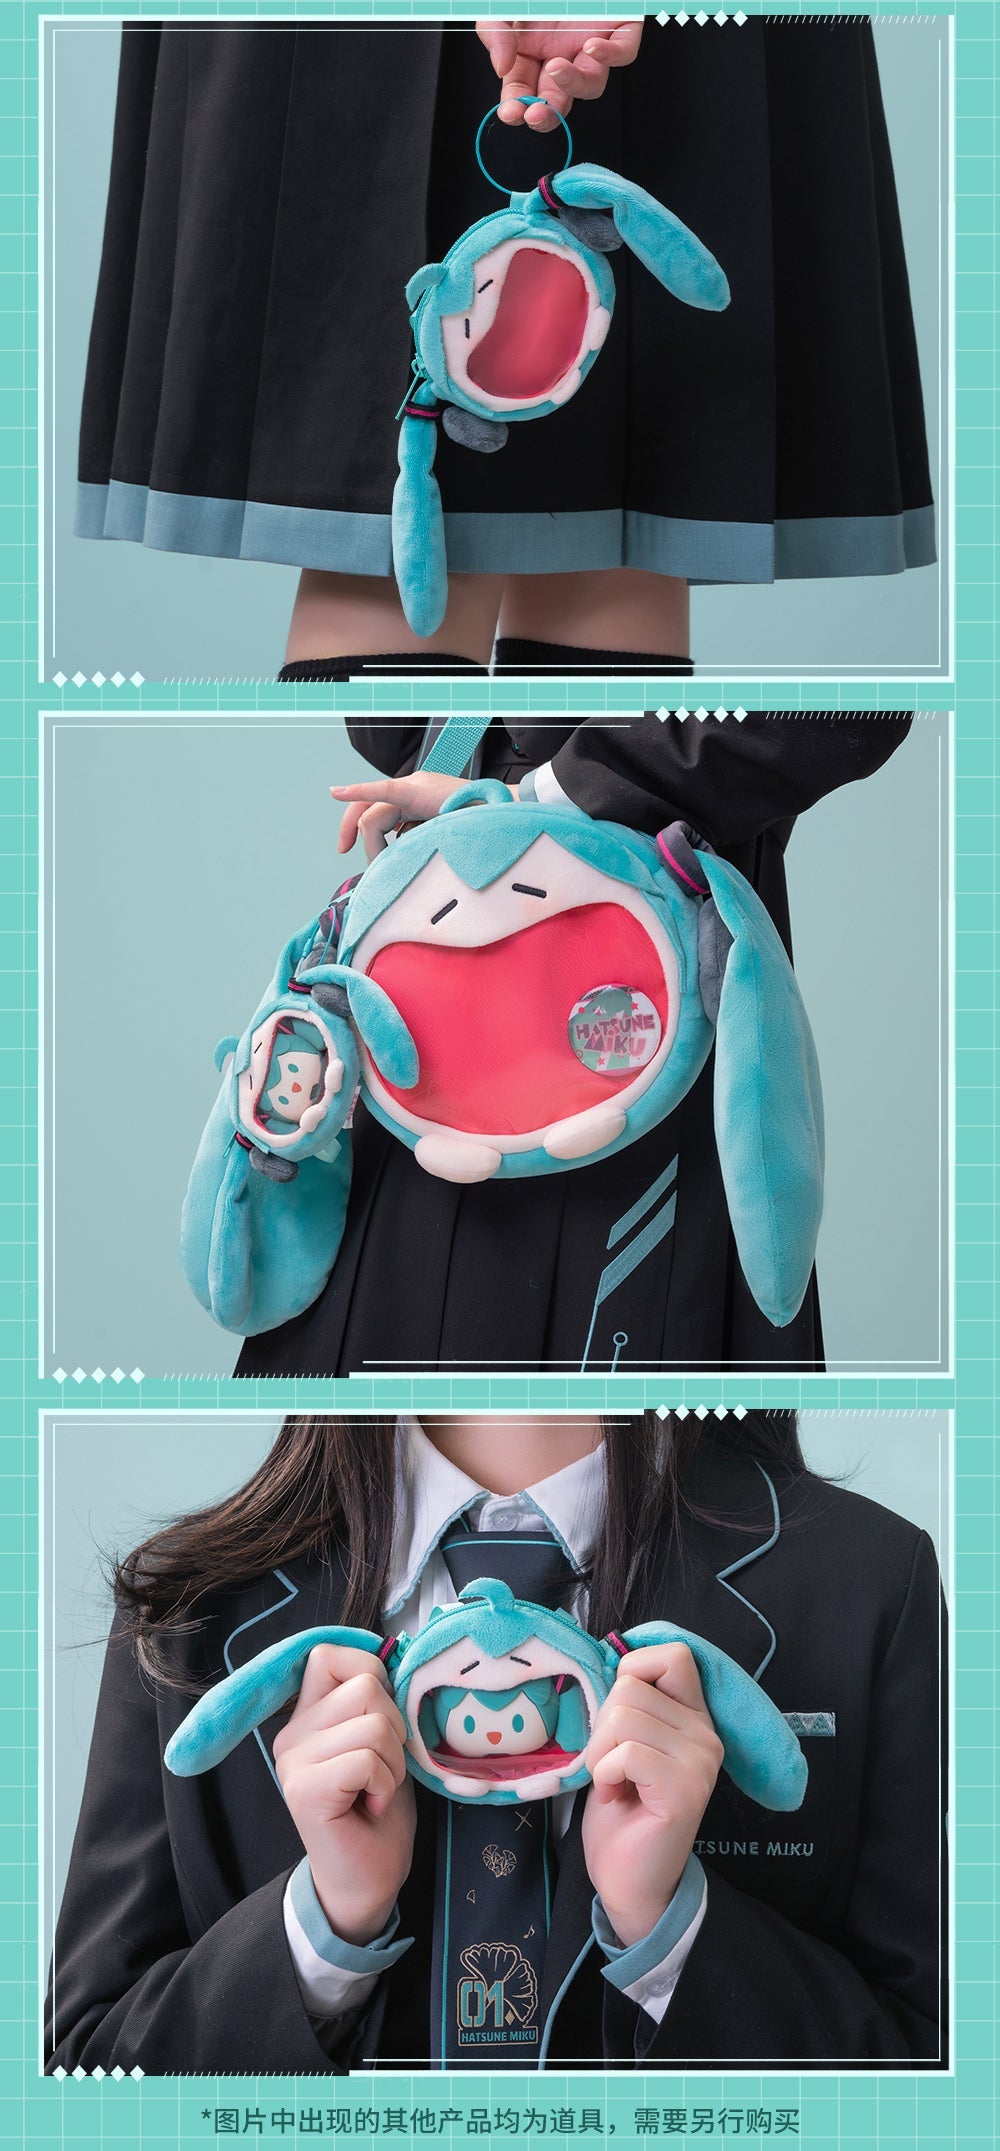 Mini Doll 15cm 10cm Transparent Rabbit Ita Bag